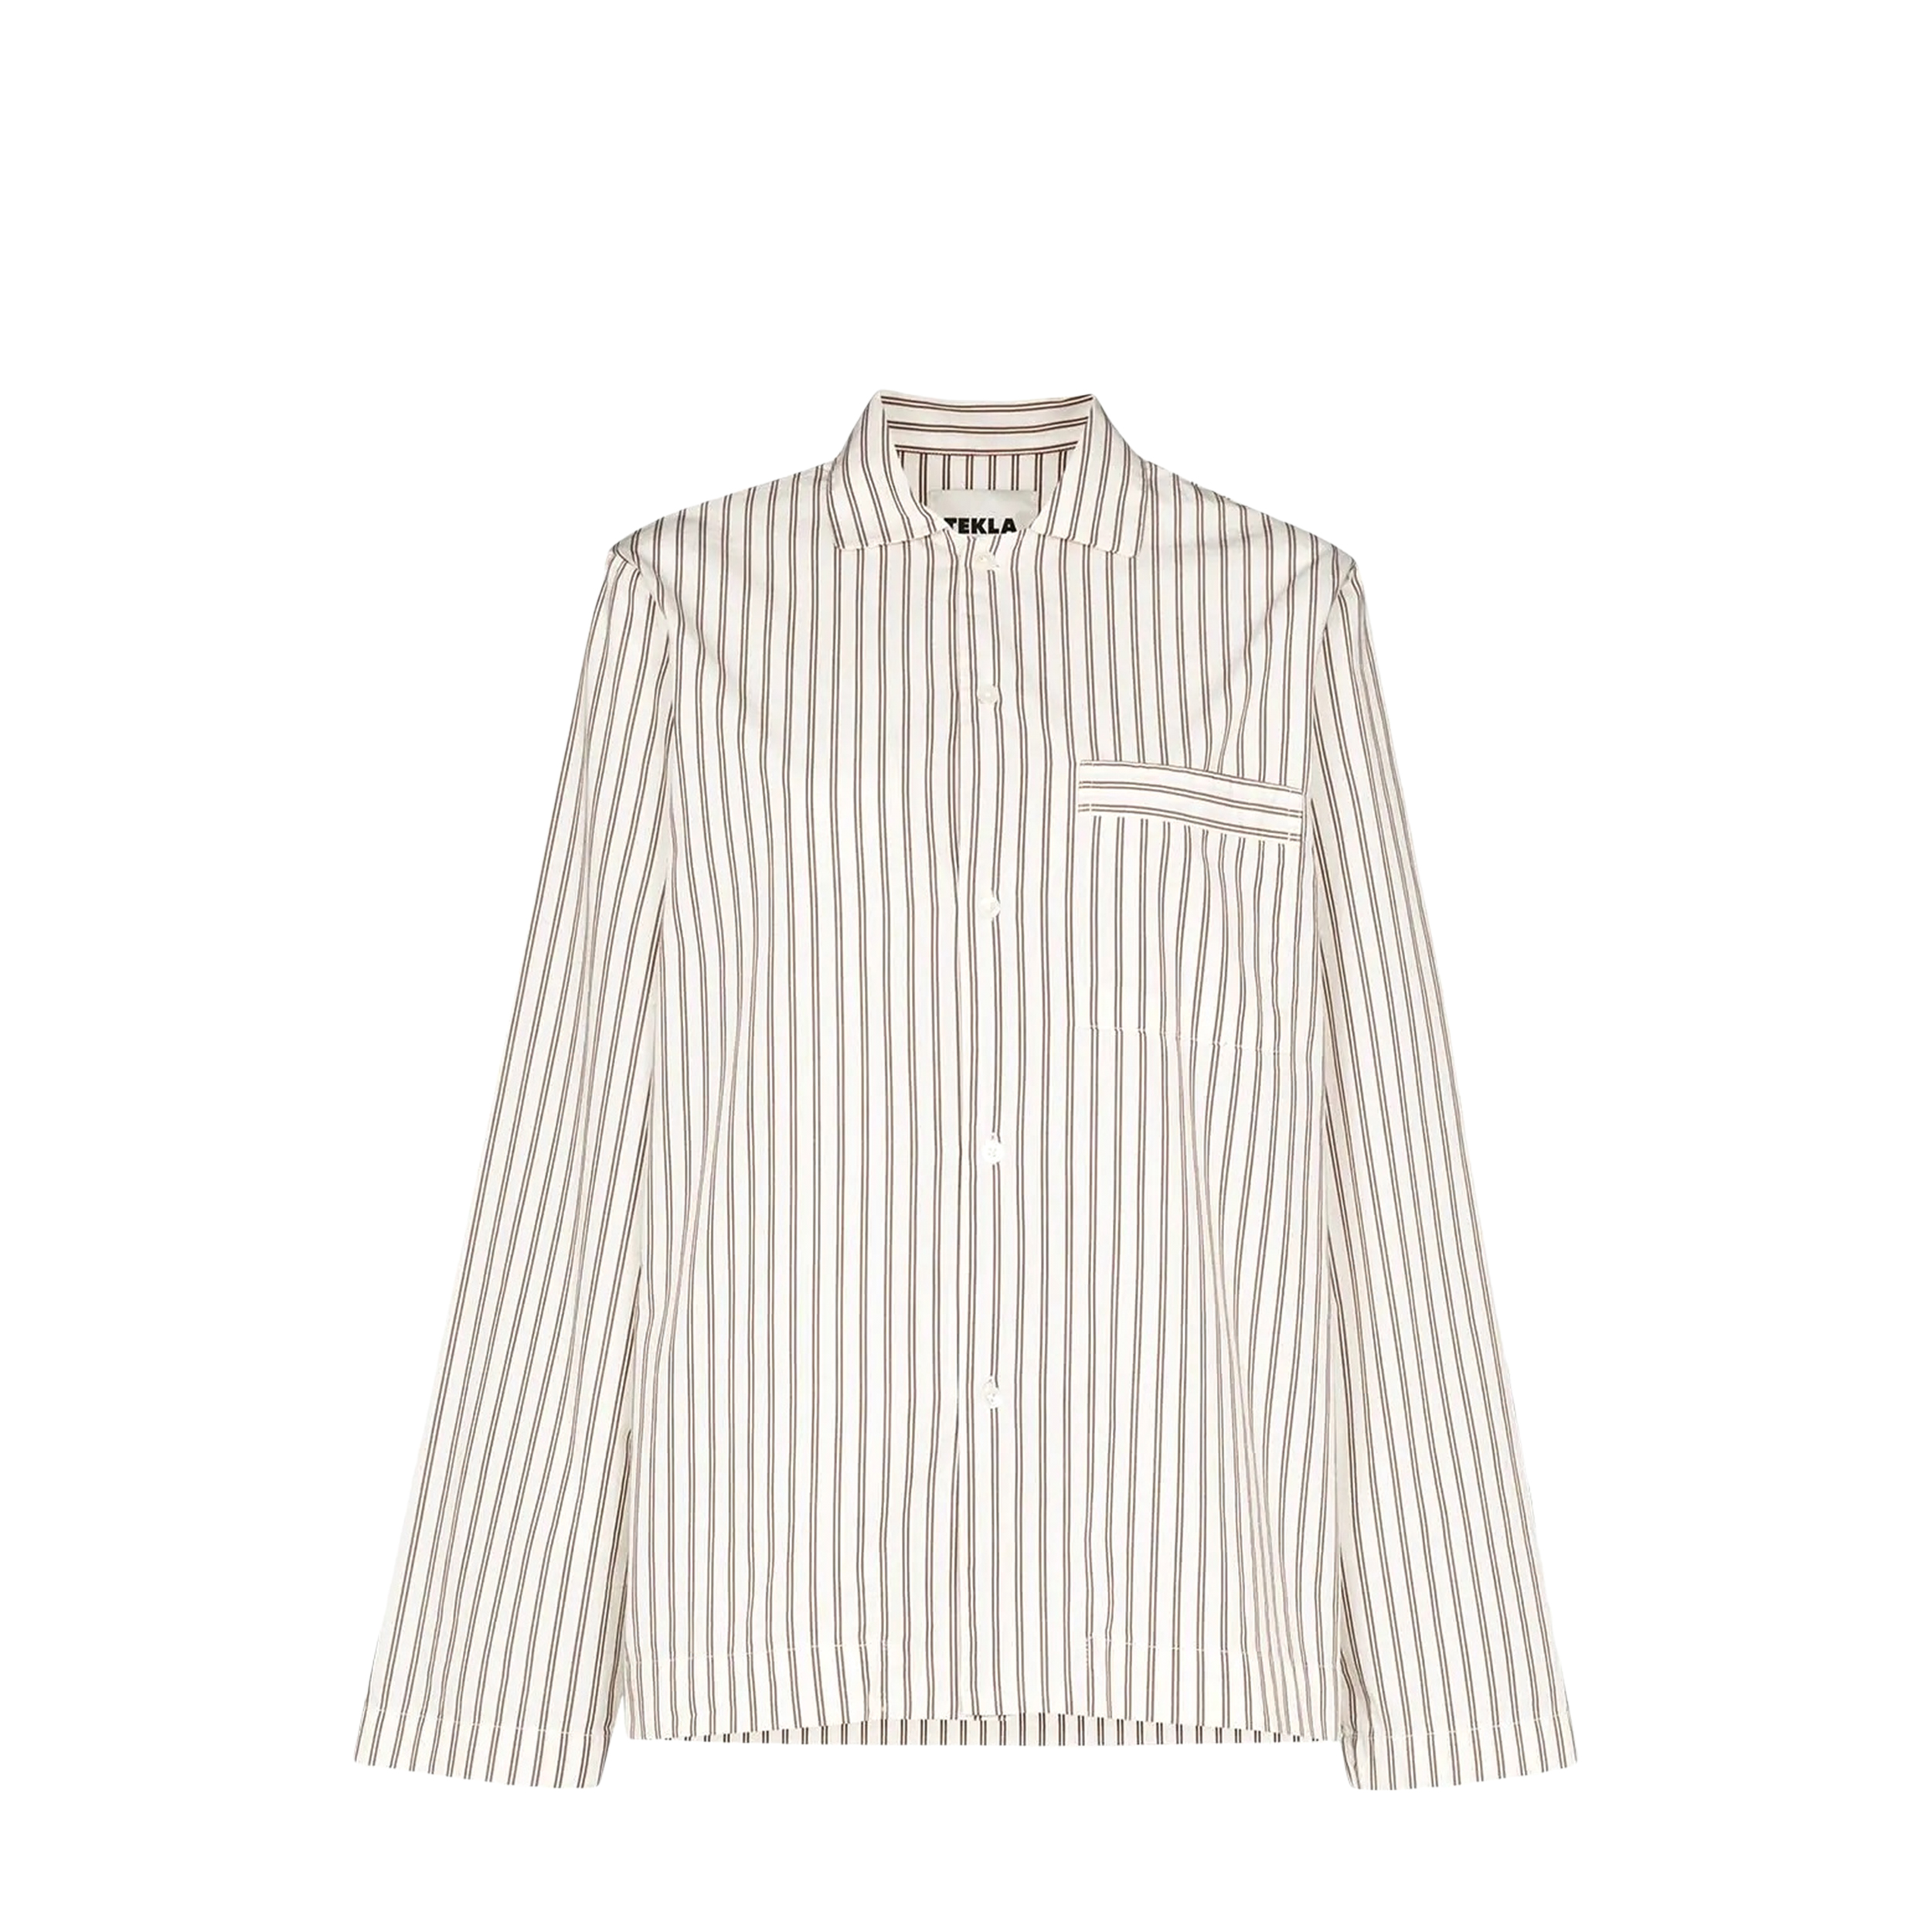 Tekla Tekla Poplin Pyjamas Shirt White & Brown Striped (L)